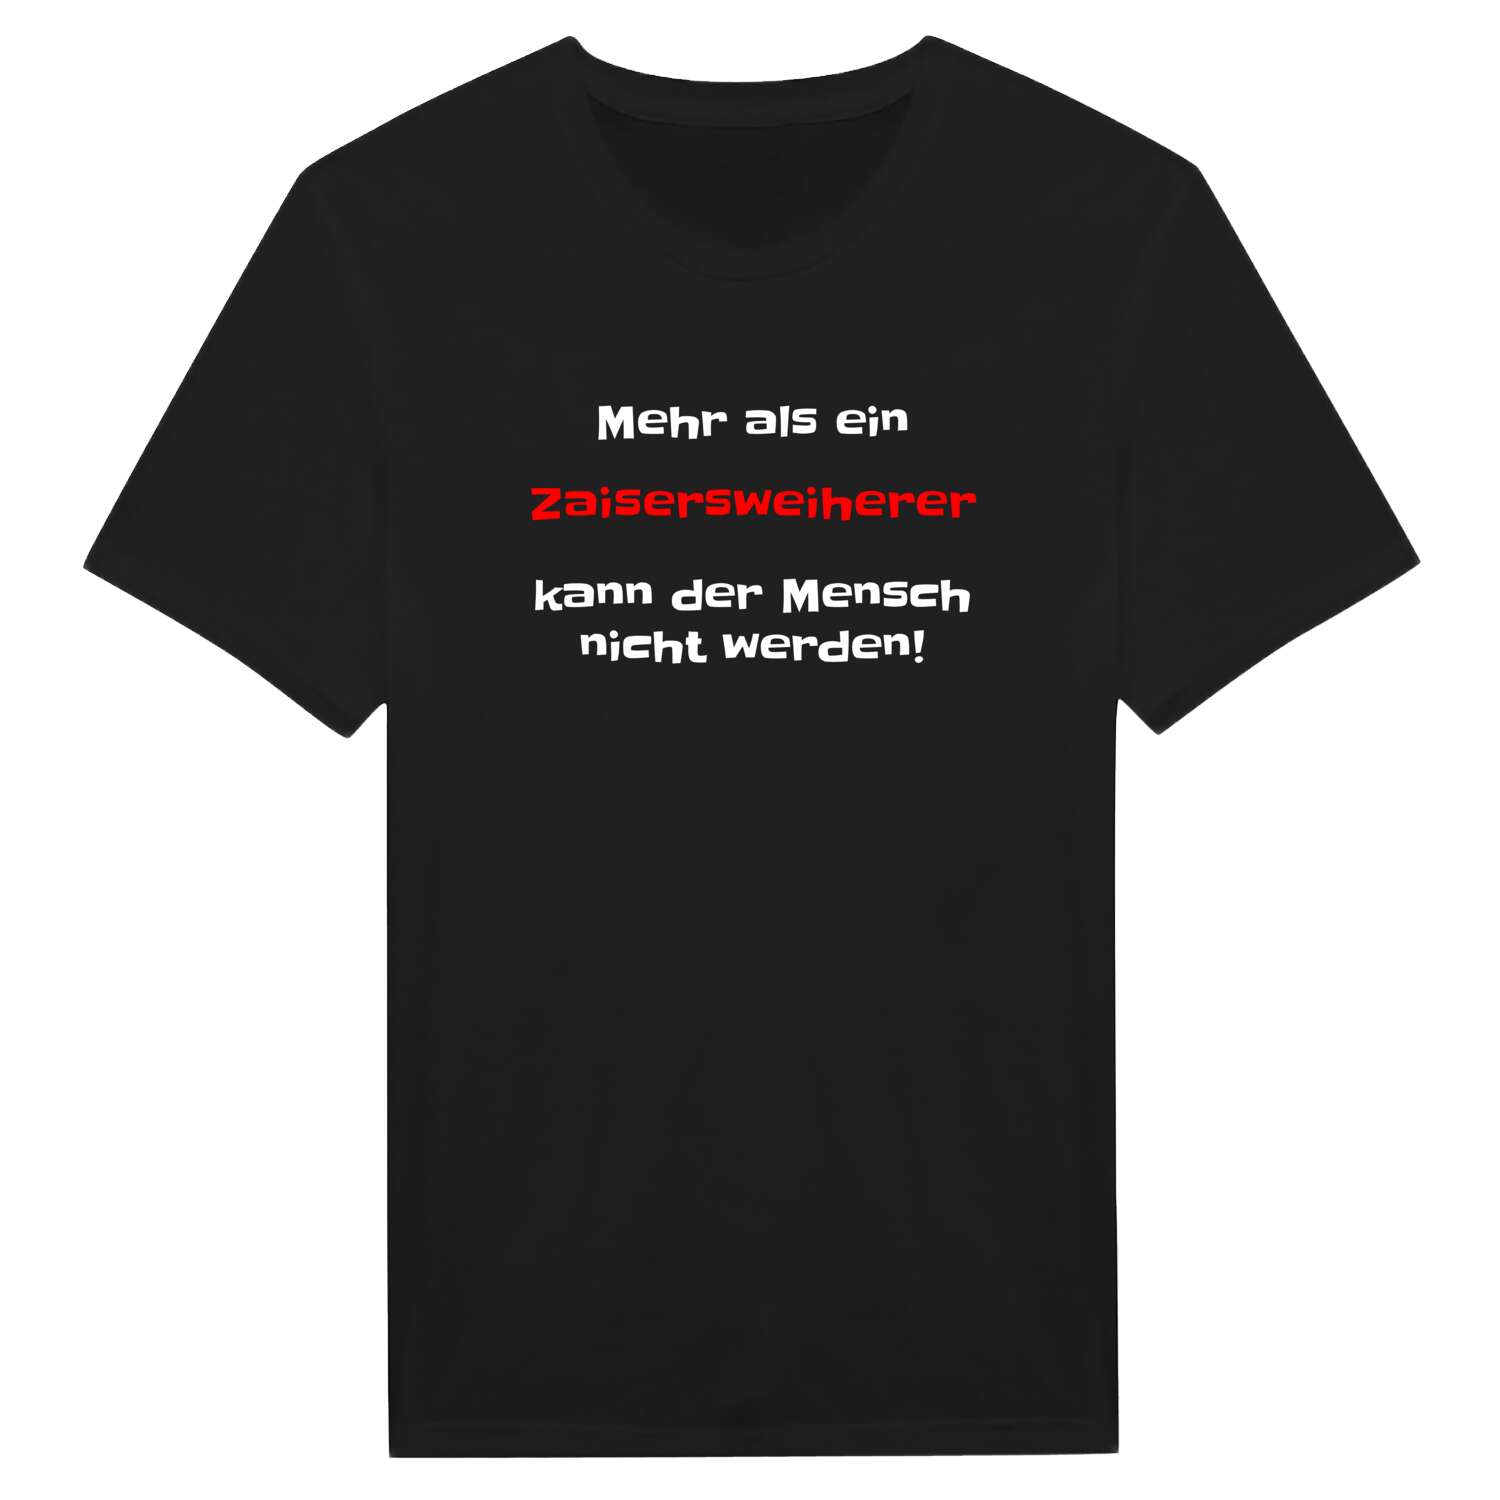 Zaisersweiher T-Shirt »Mehr als ein«